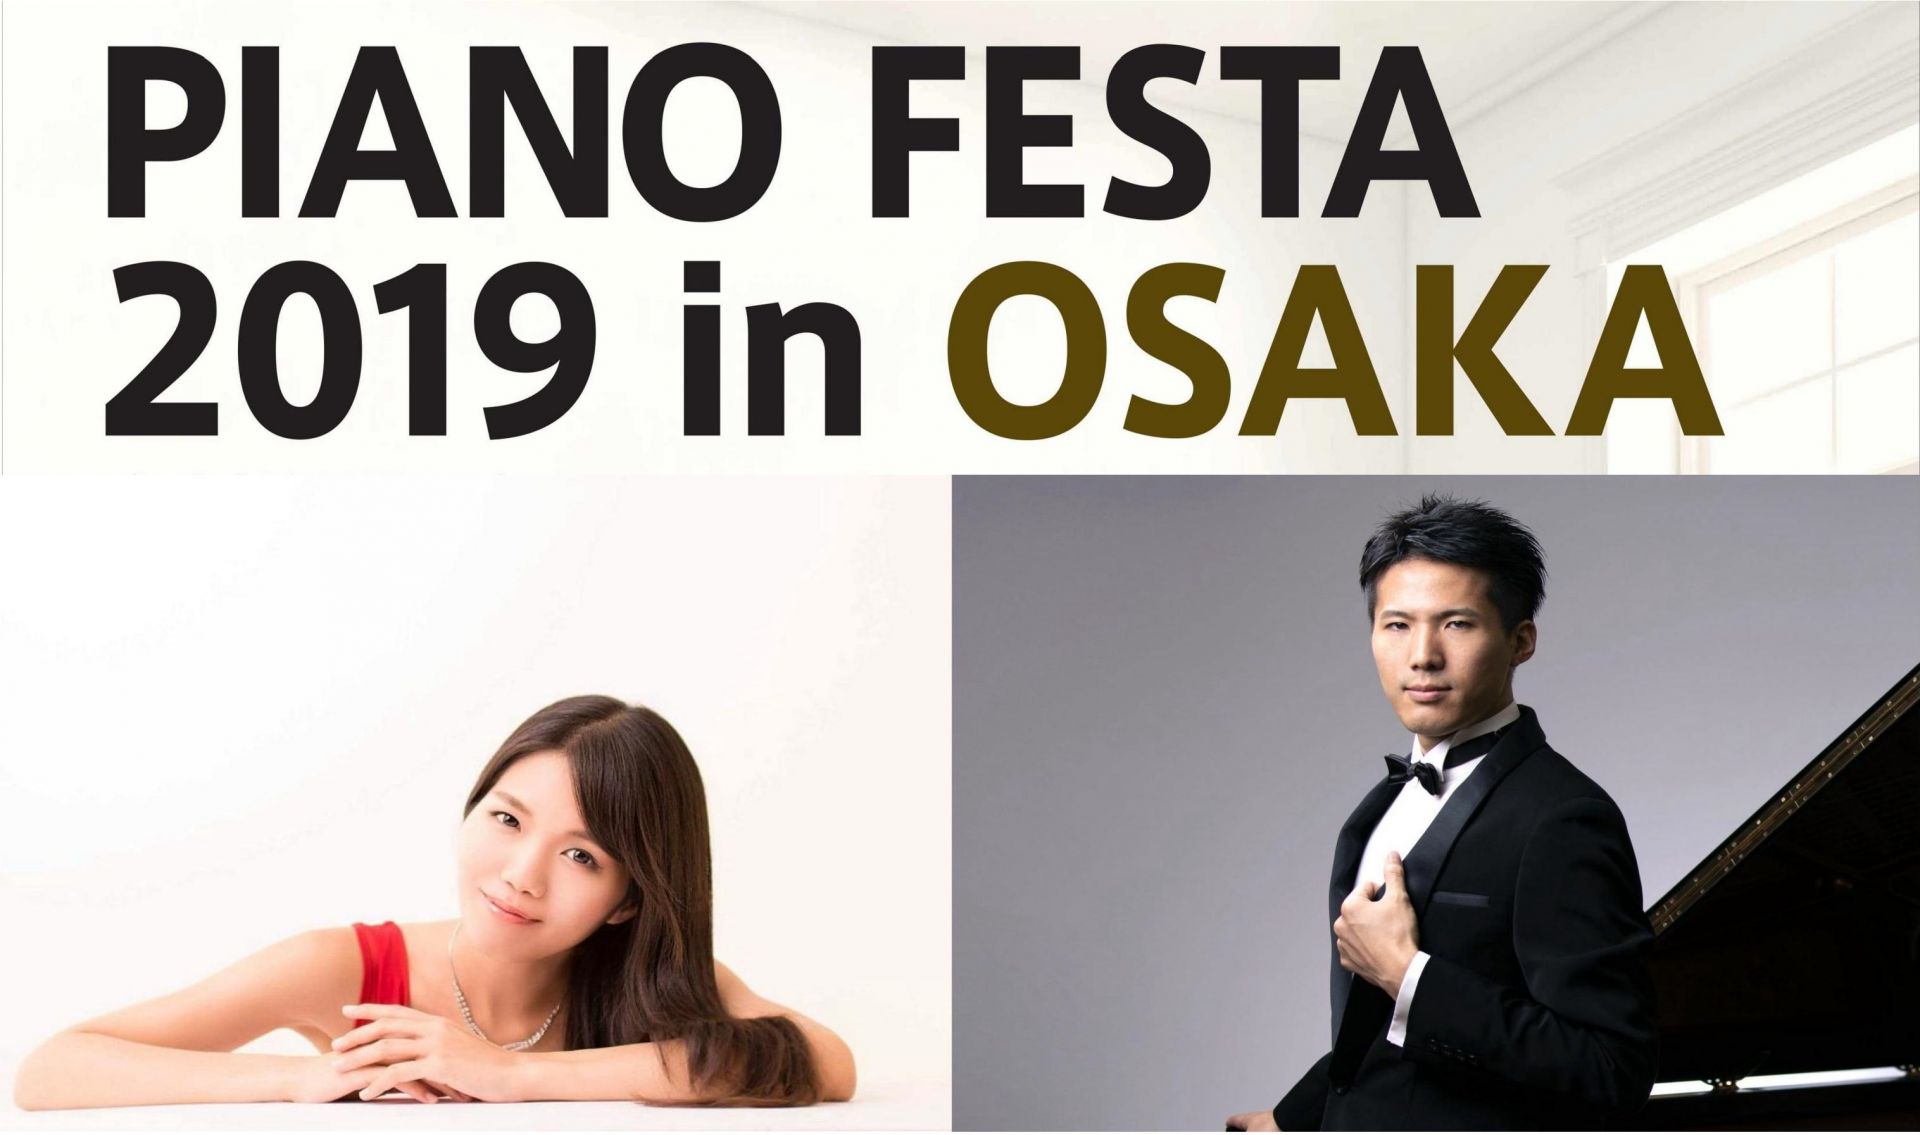 【ピアノフェスタ2019in大阪 特別企画】2019年5月5日、2台のピアノ・2人のピアニストによるスペシャルデュオコンサート